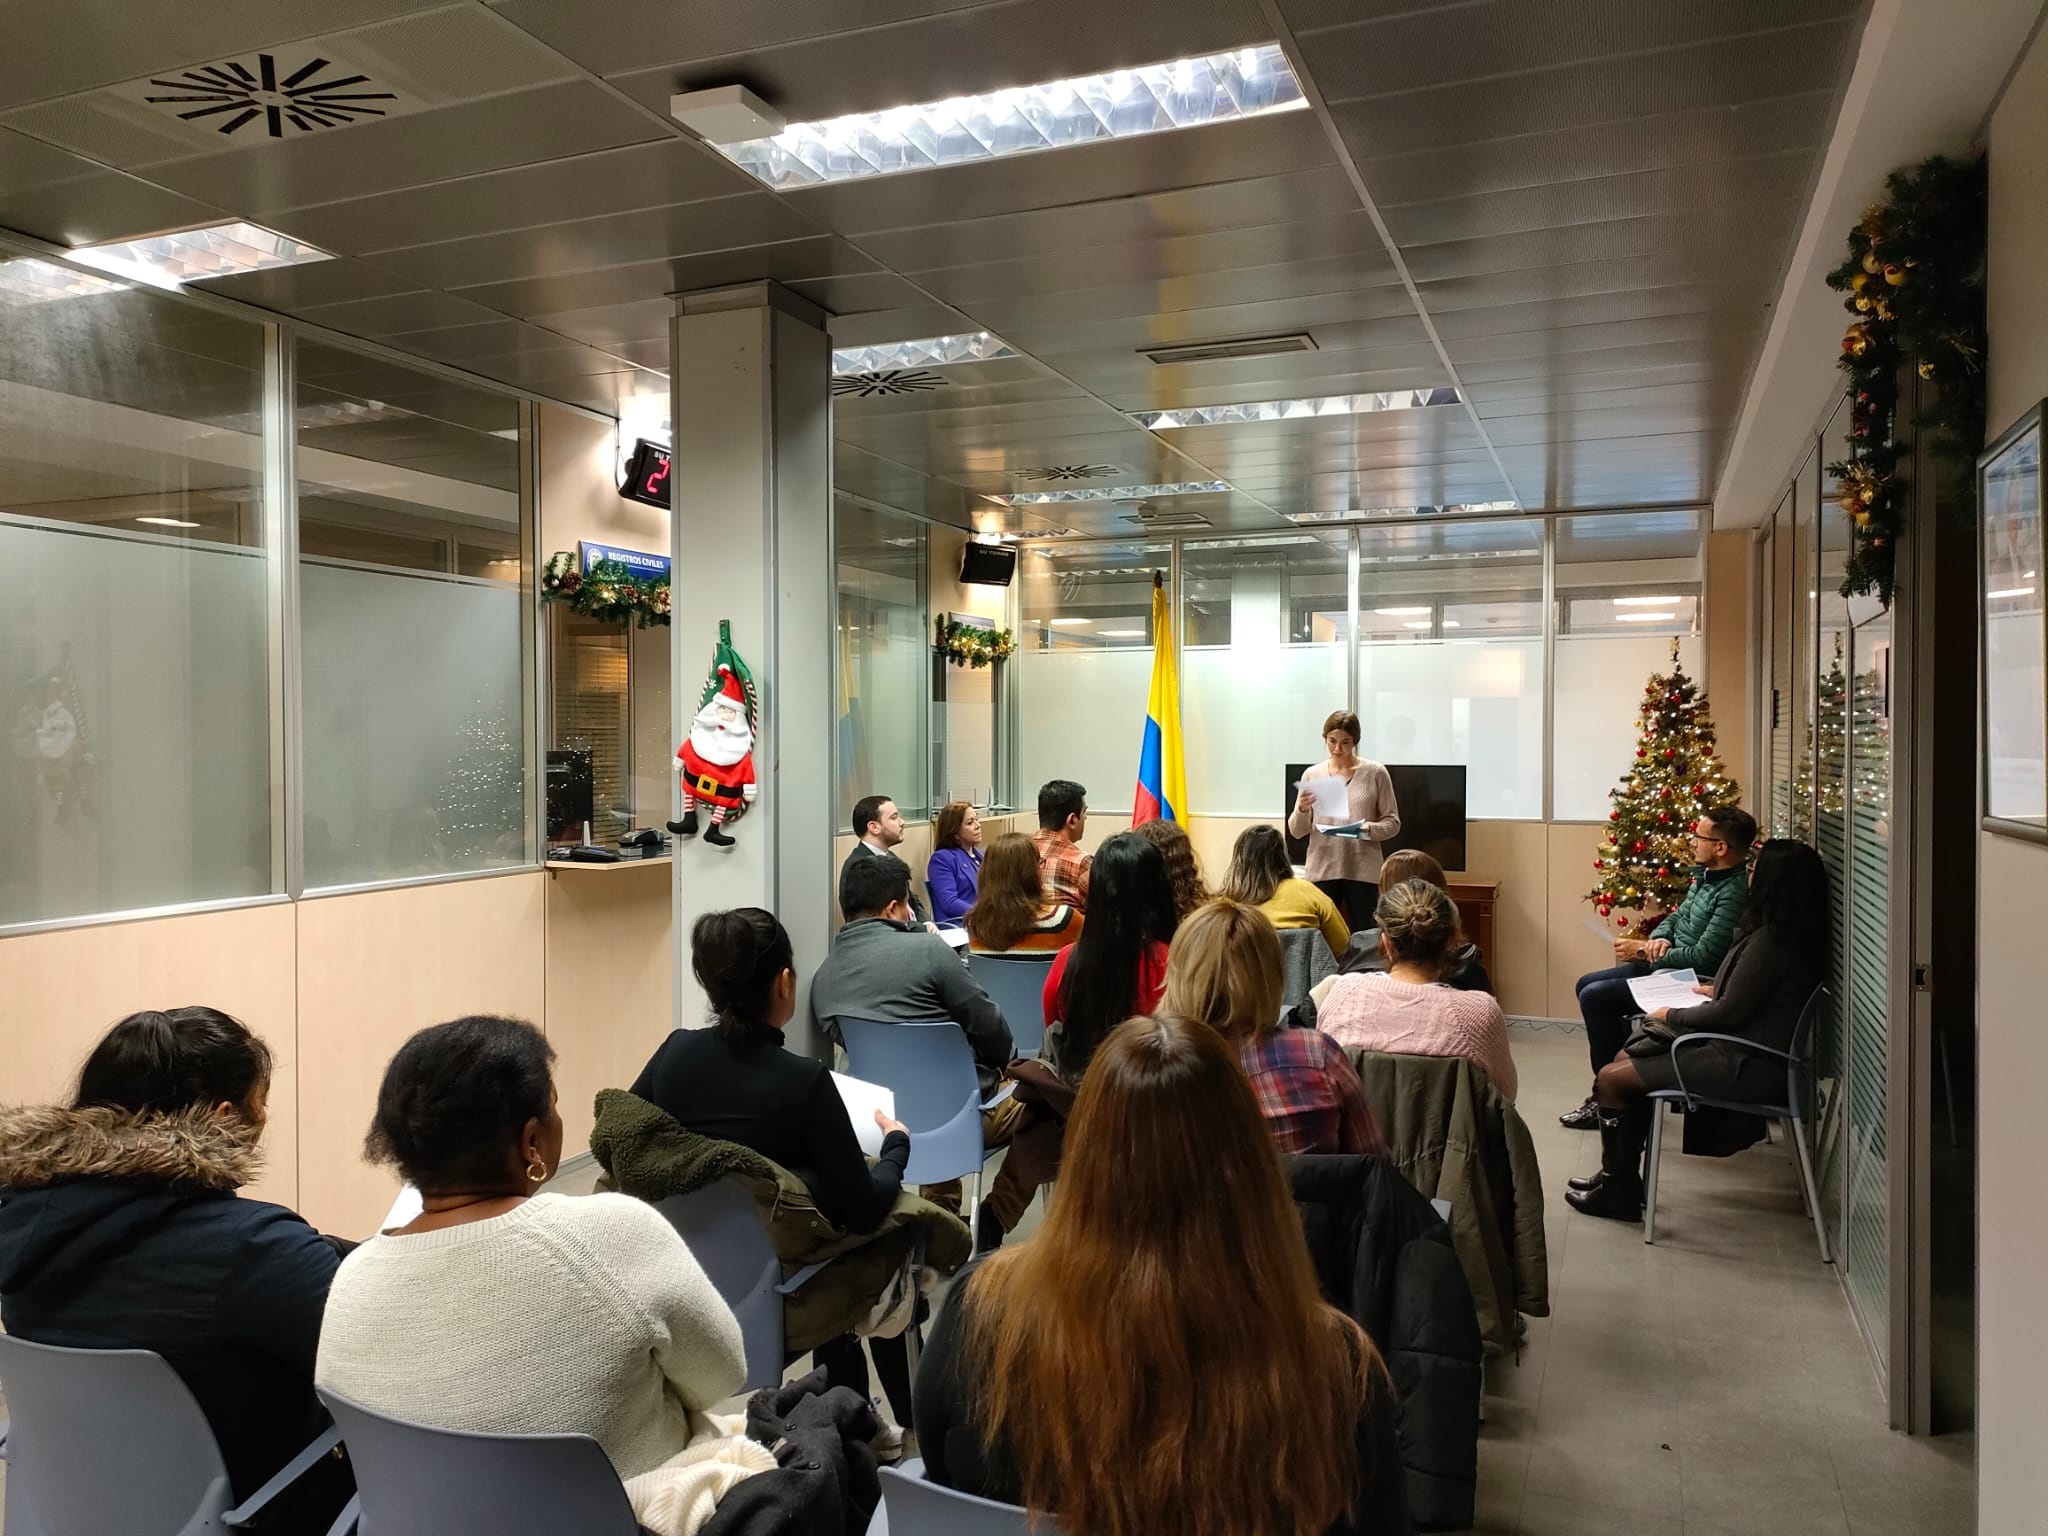 Consulado de Colombia en Bilbao realizó charla formativa sobre prevención del abuso sexual infantil